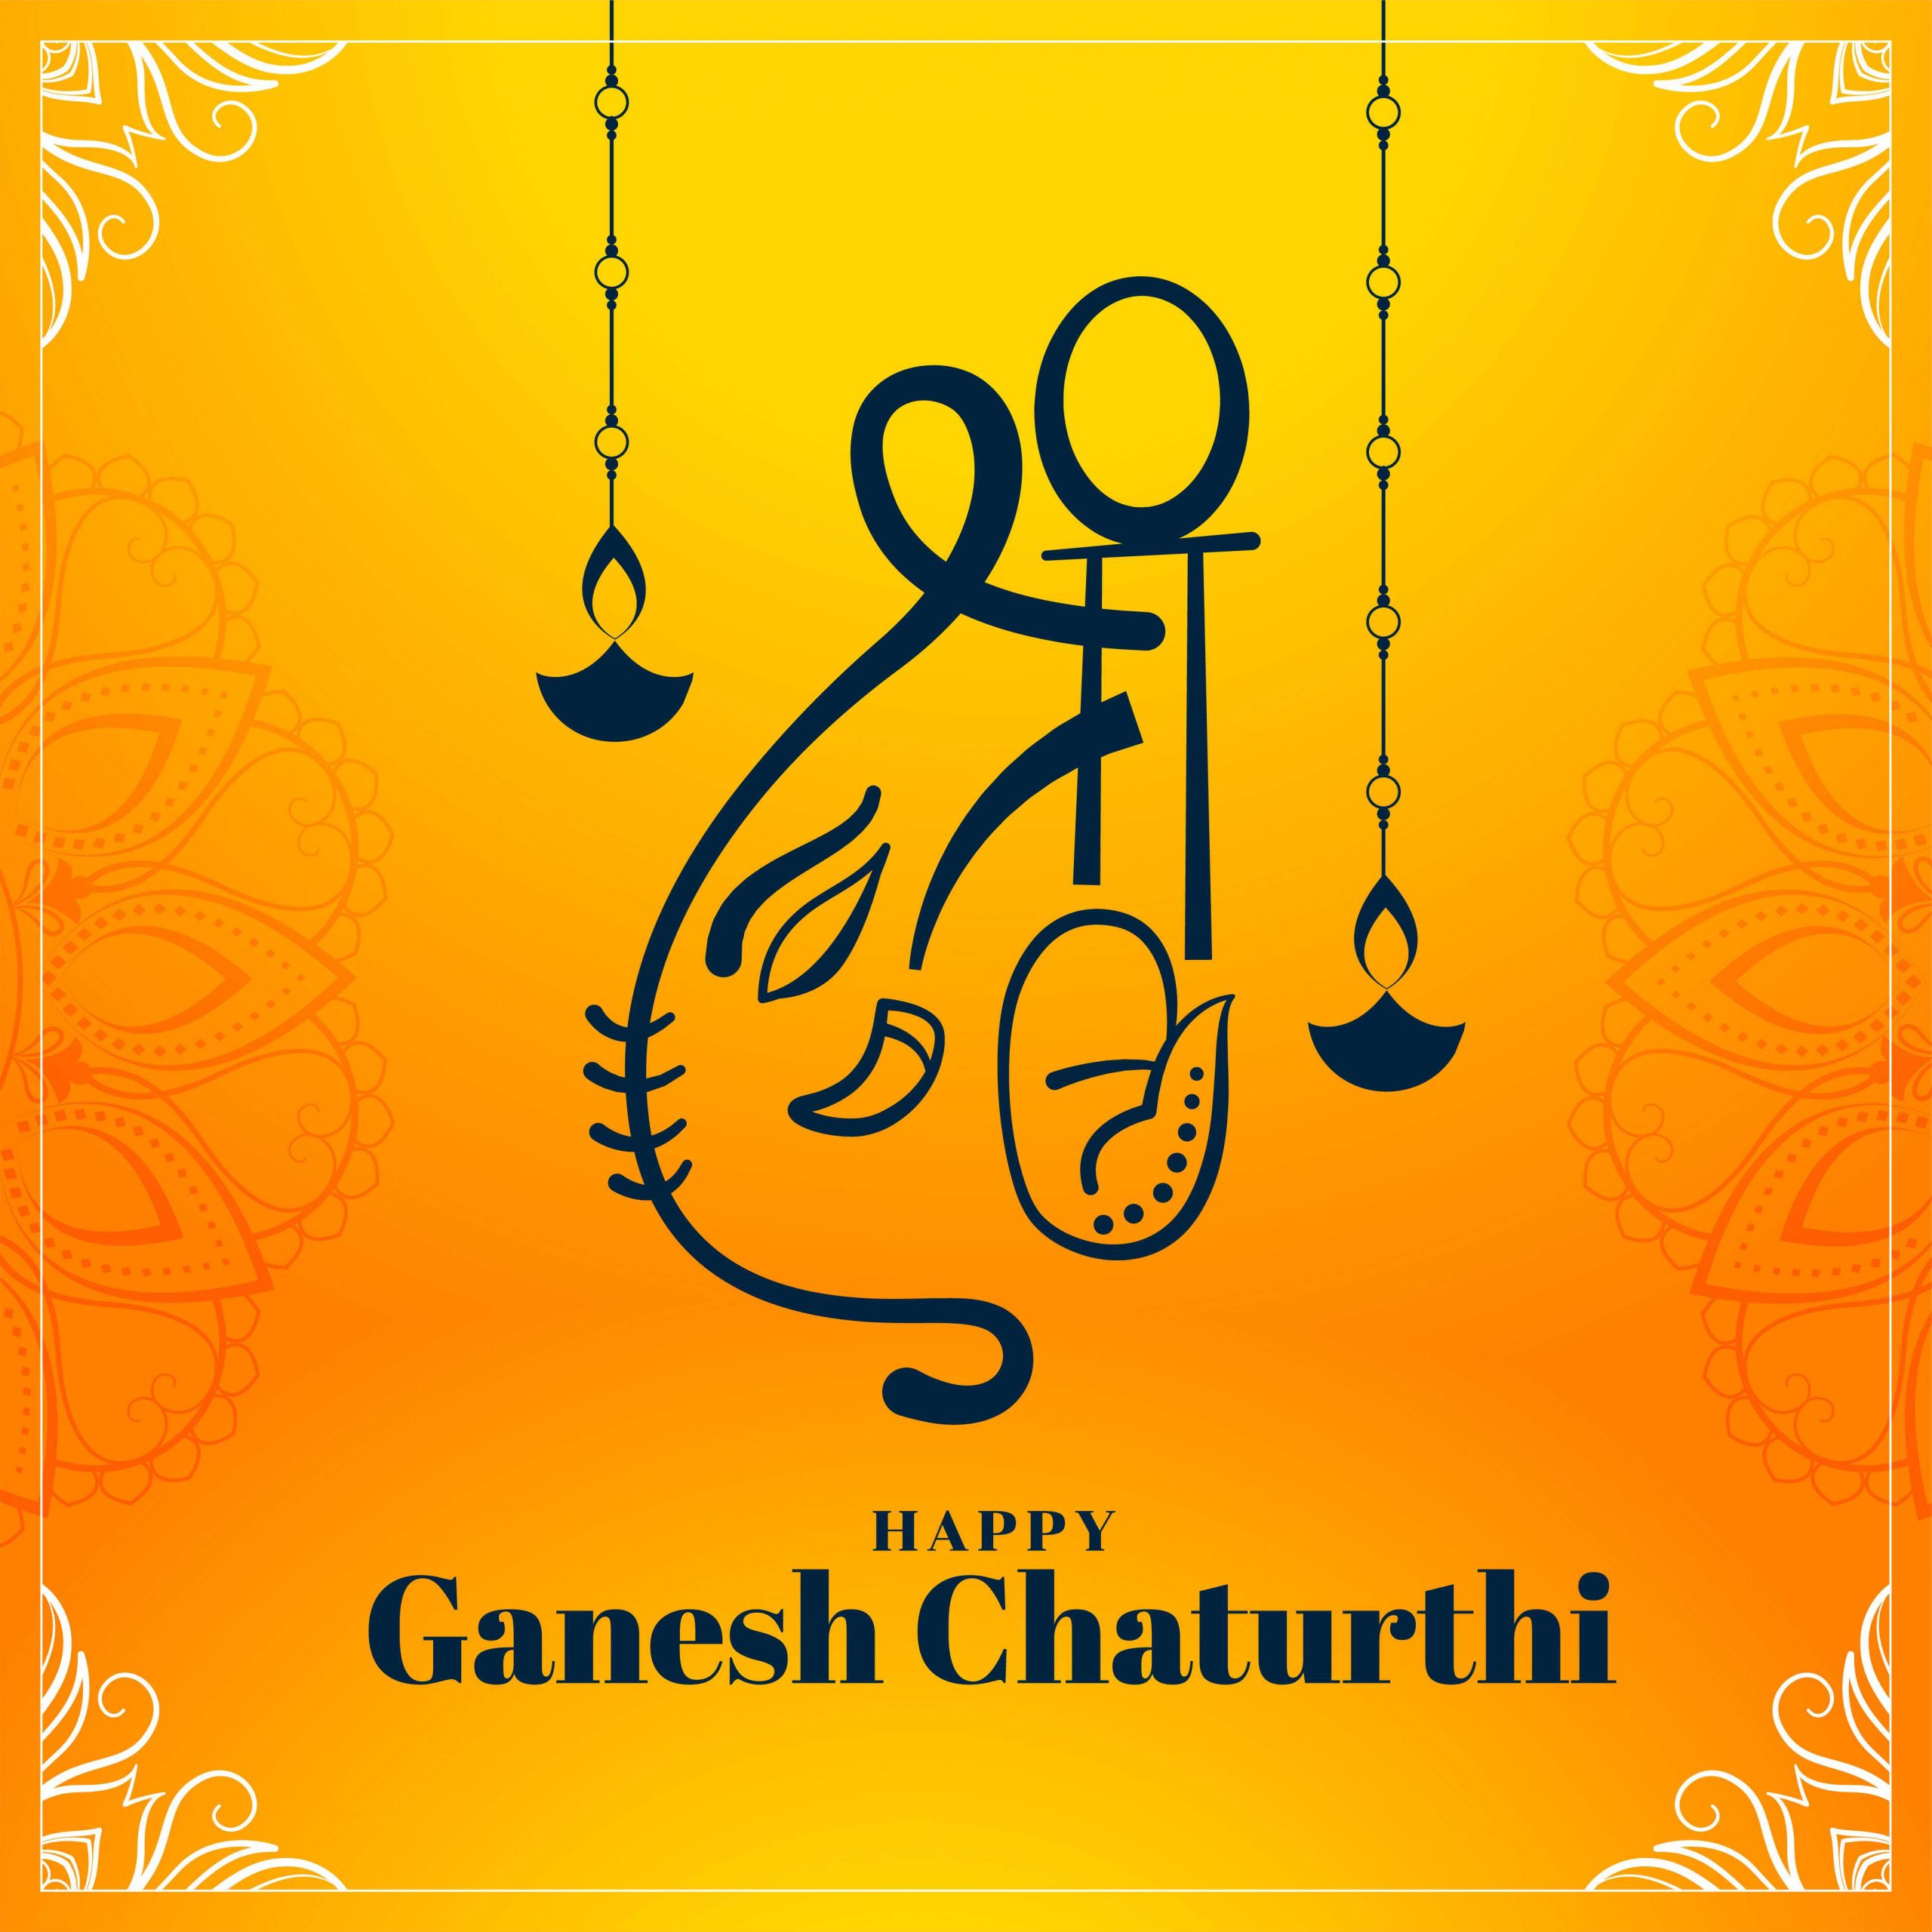 Ganesh Chaturthi wallpaper